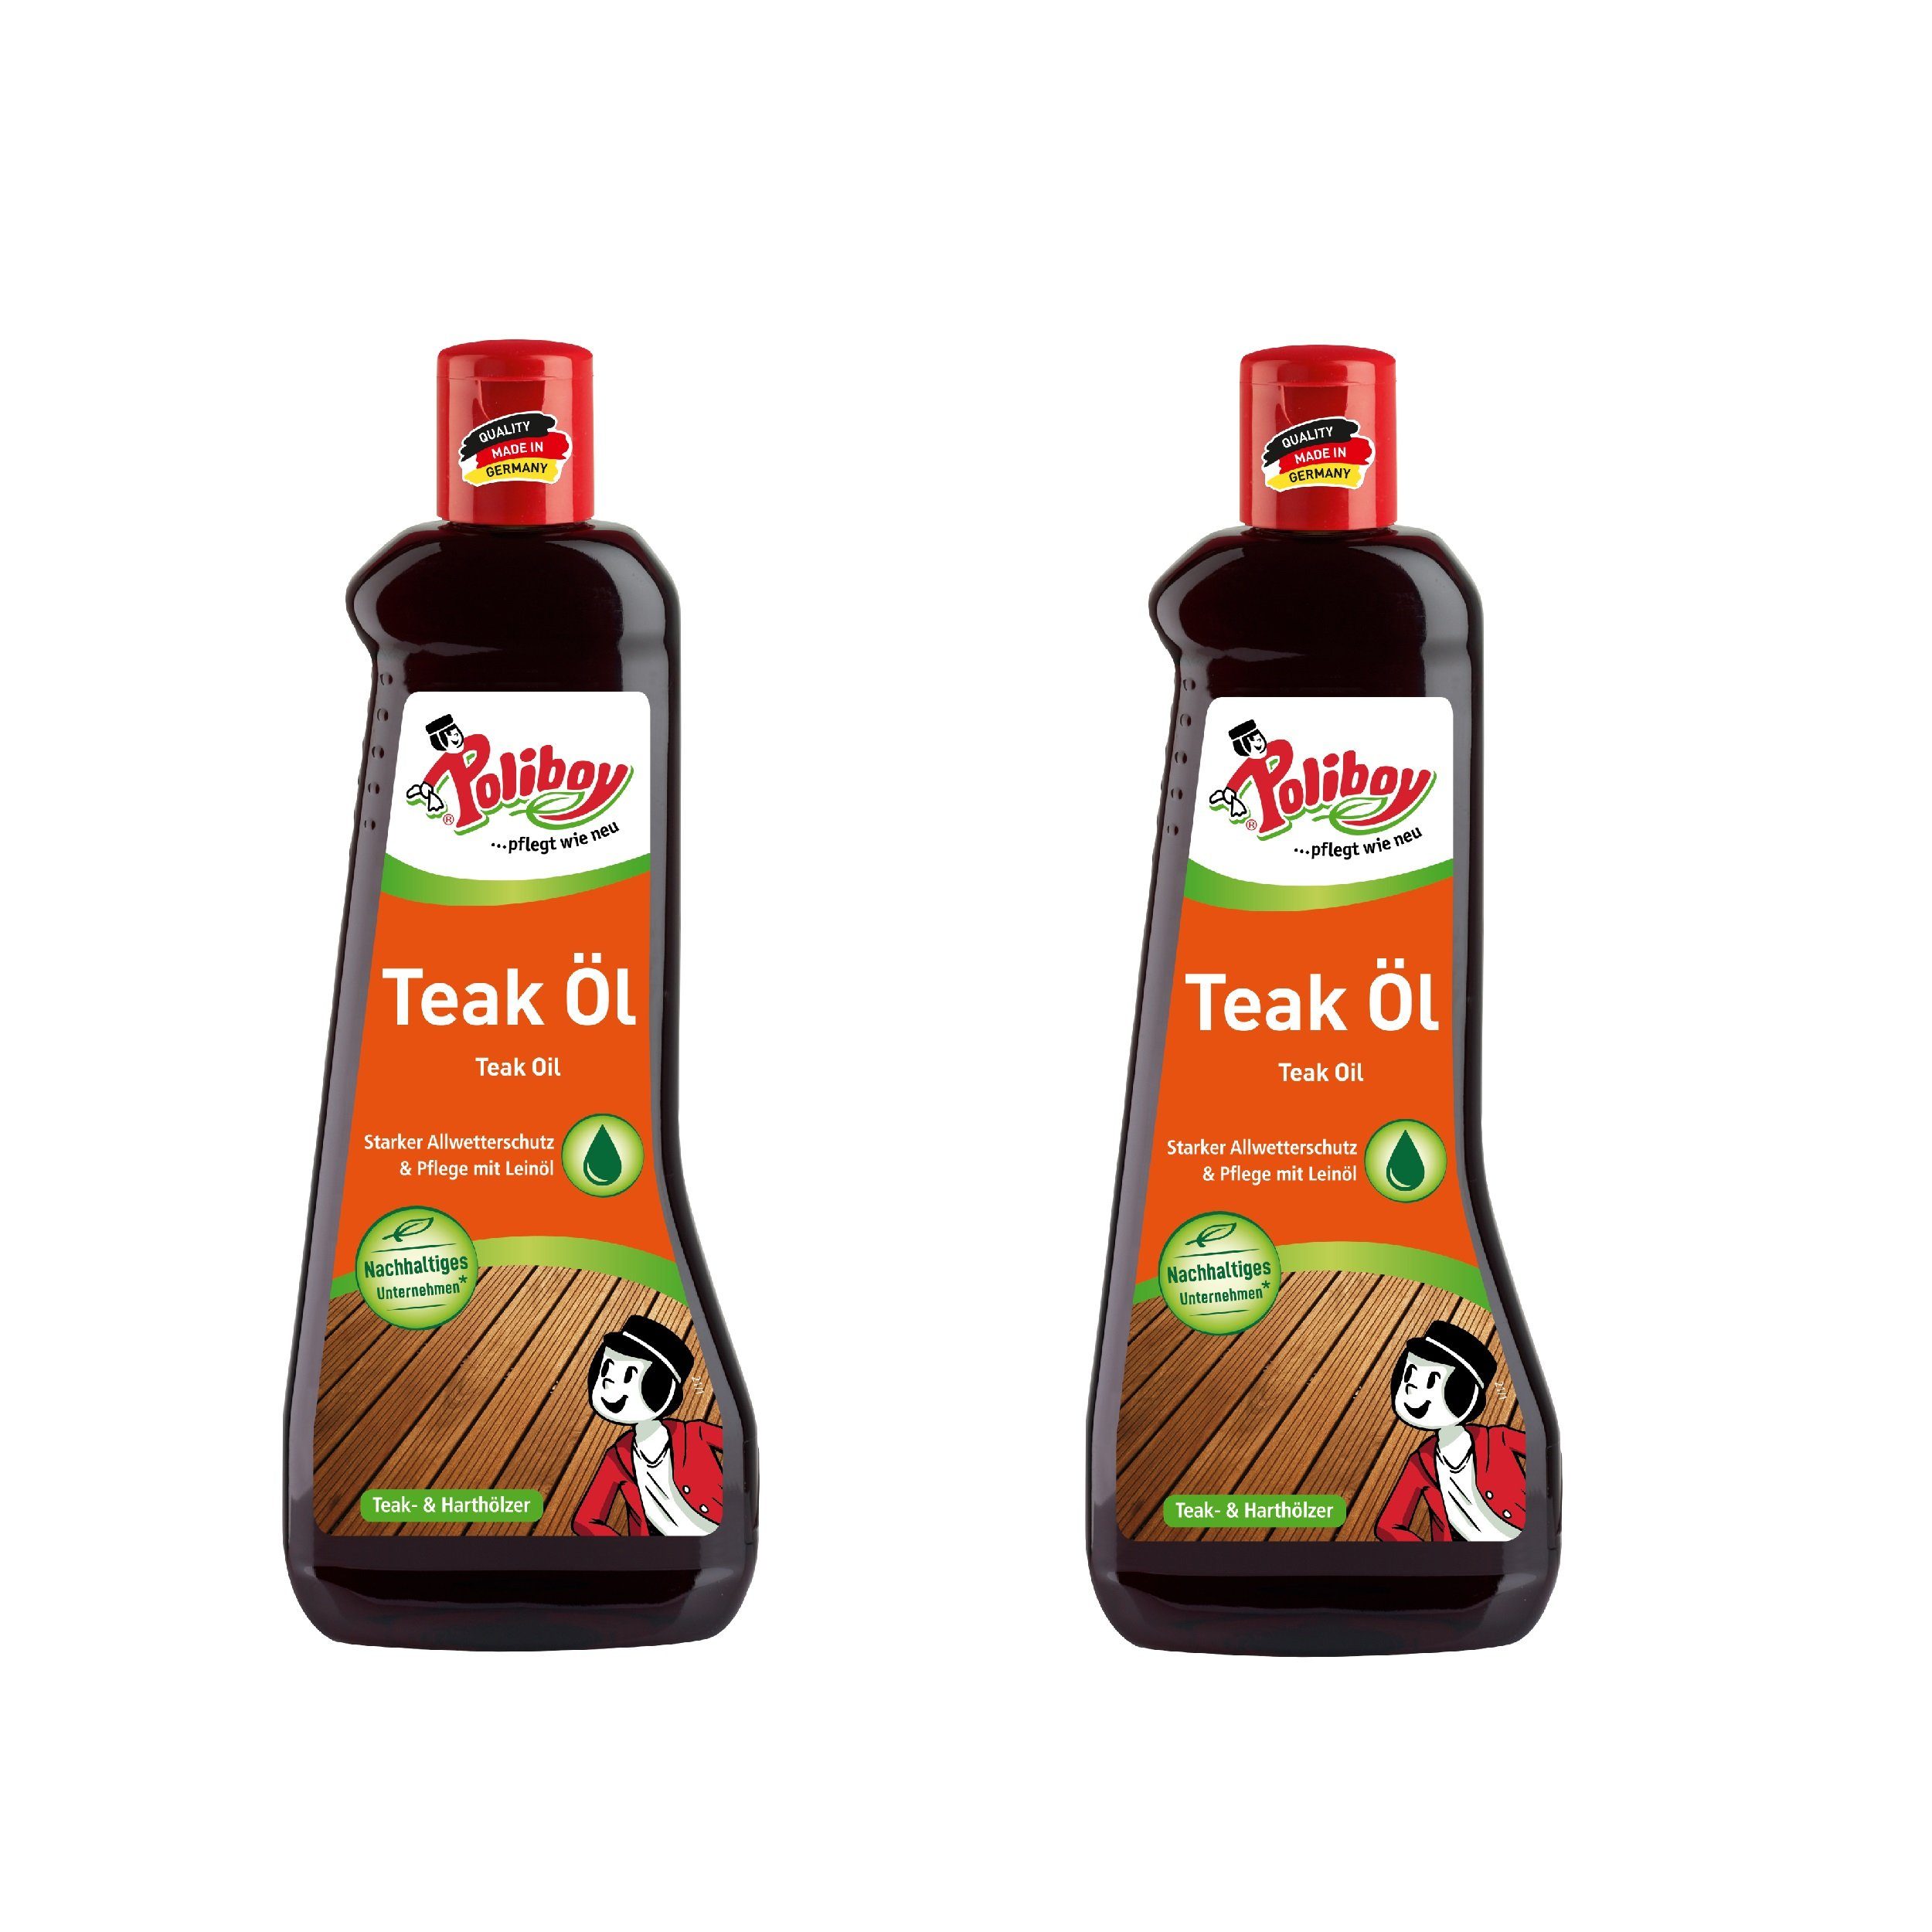 poliboy Teak Öl dunkel - 2x0,5 Liter- für geölte, naturbelassene Gegenstände Holzreiniger (reinigt, pflegt und schützt - Made in Germany)